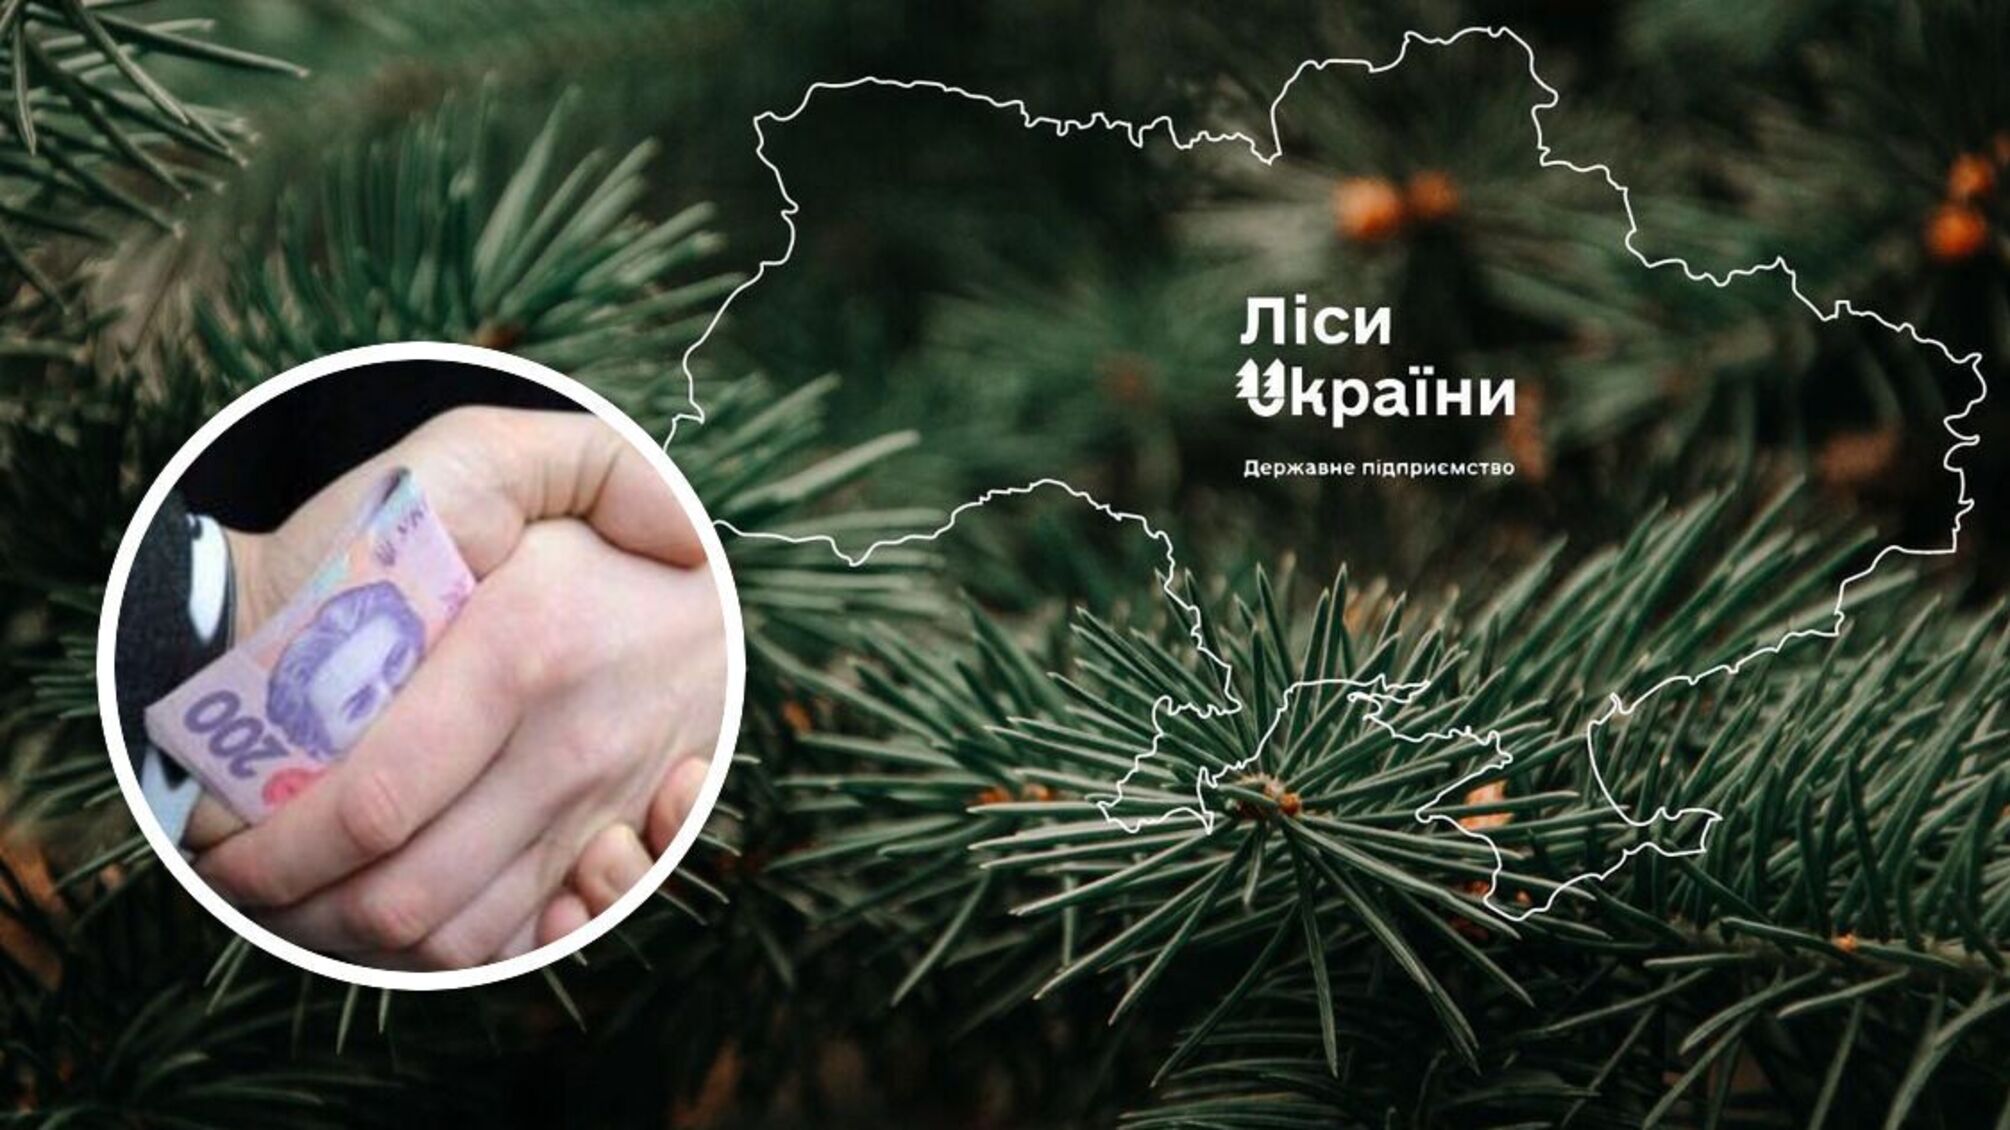 ГП 'Леса Украины' ищет пиарщиков за 5 миллионов: объявлен тендер